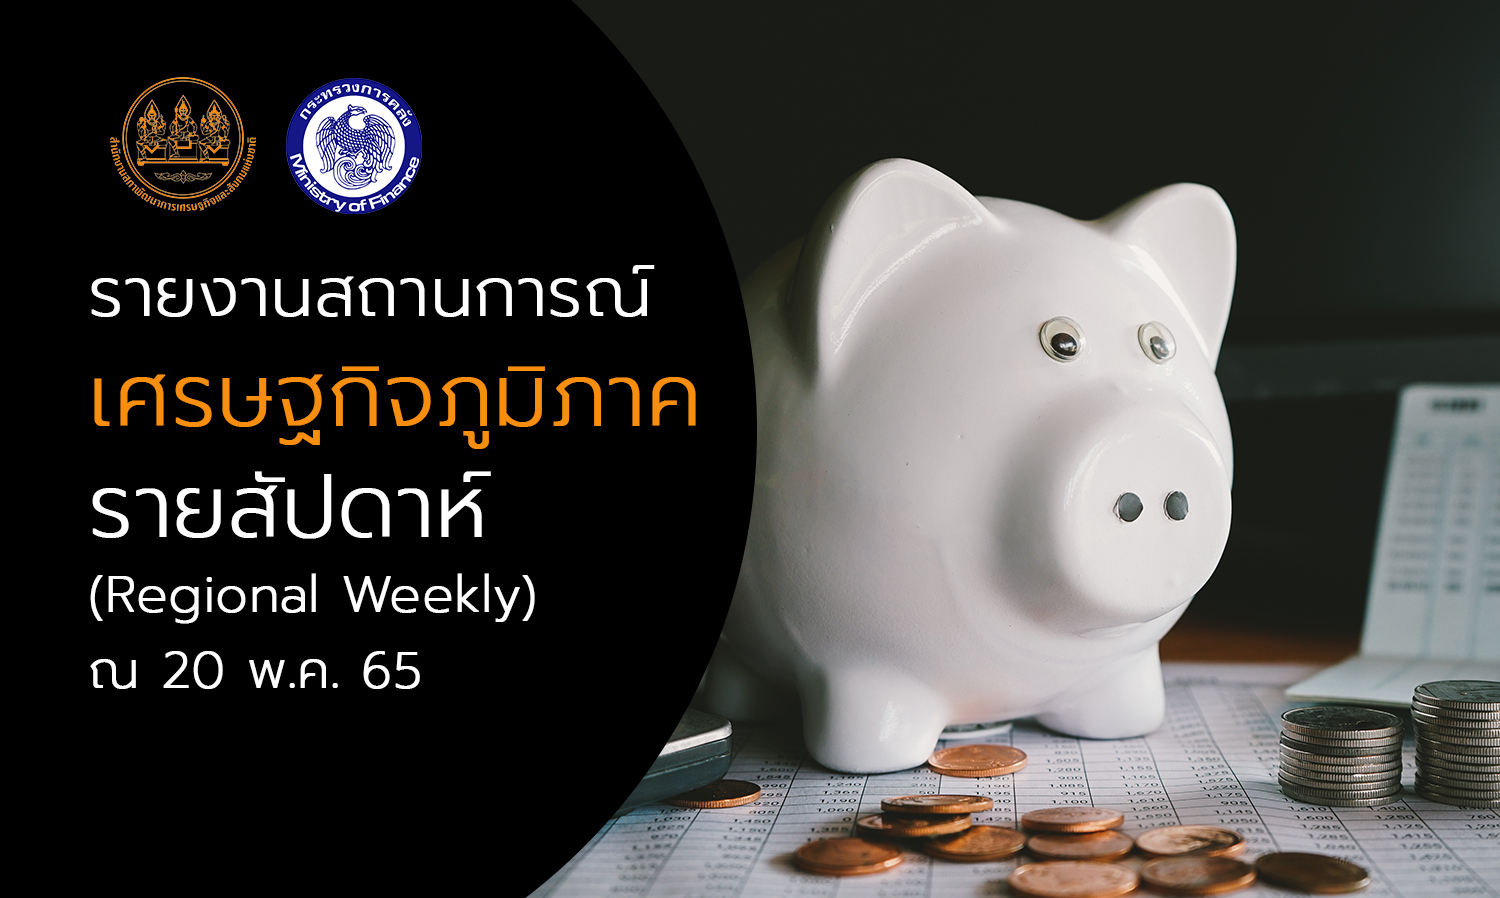 รายงานสถานการณ์เศรษฐกิจภูมิภาครายสัปดาห์ (Regional Weekly) ณ 20 พ.ค. 65 